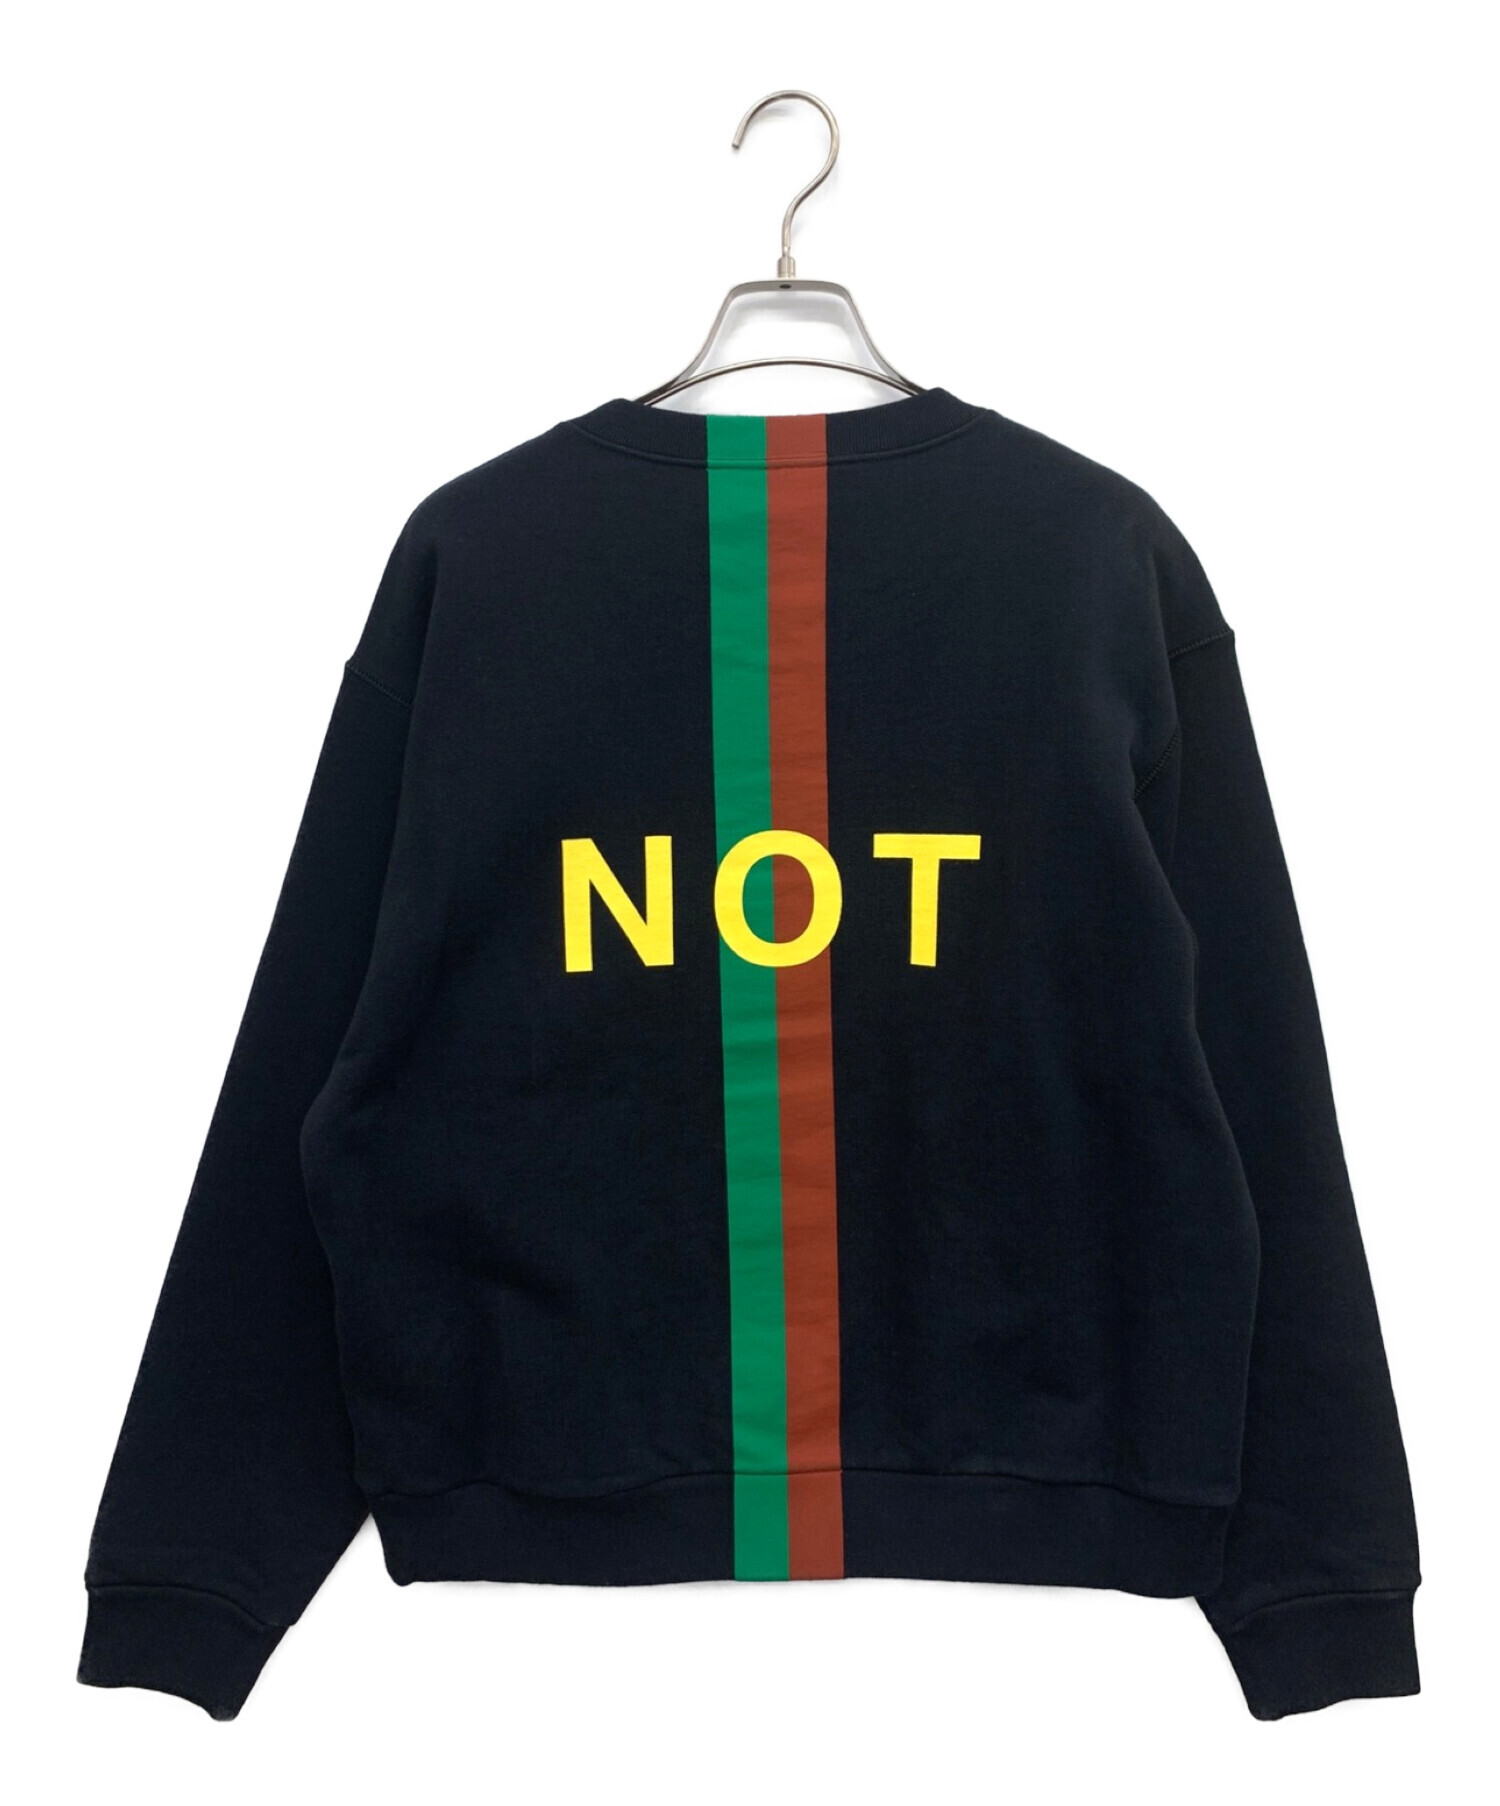 中古・古着通販】GUCCI (グッチ) Fake/Not Print Sweatshirt ブラック